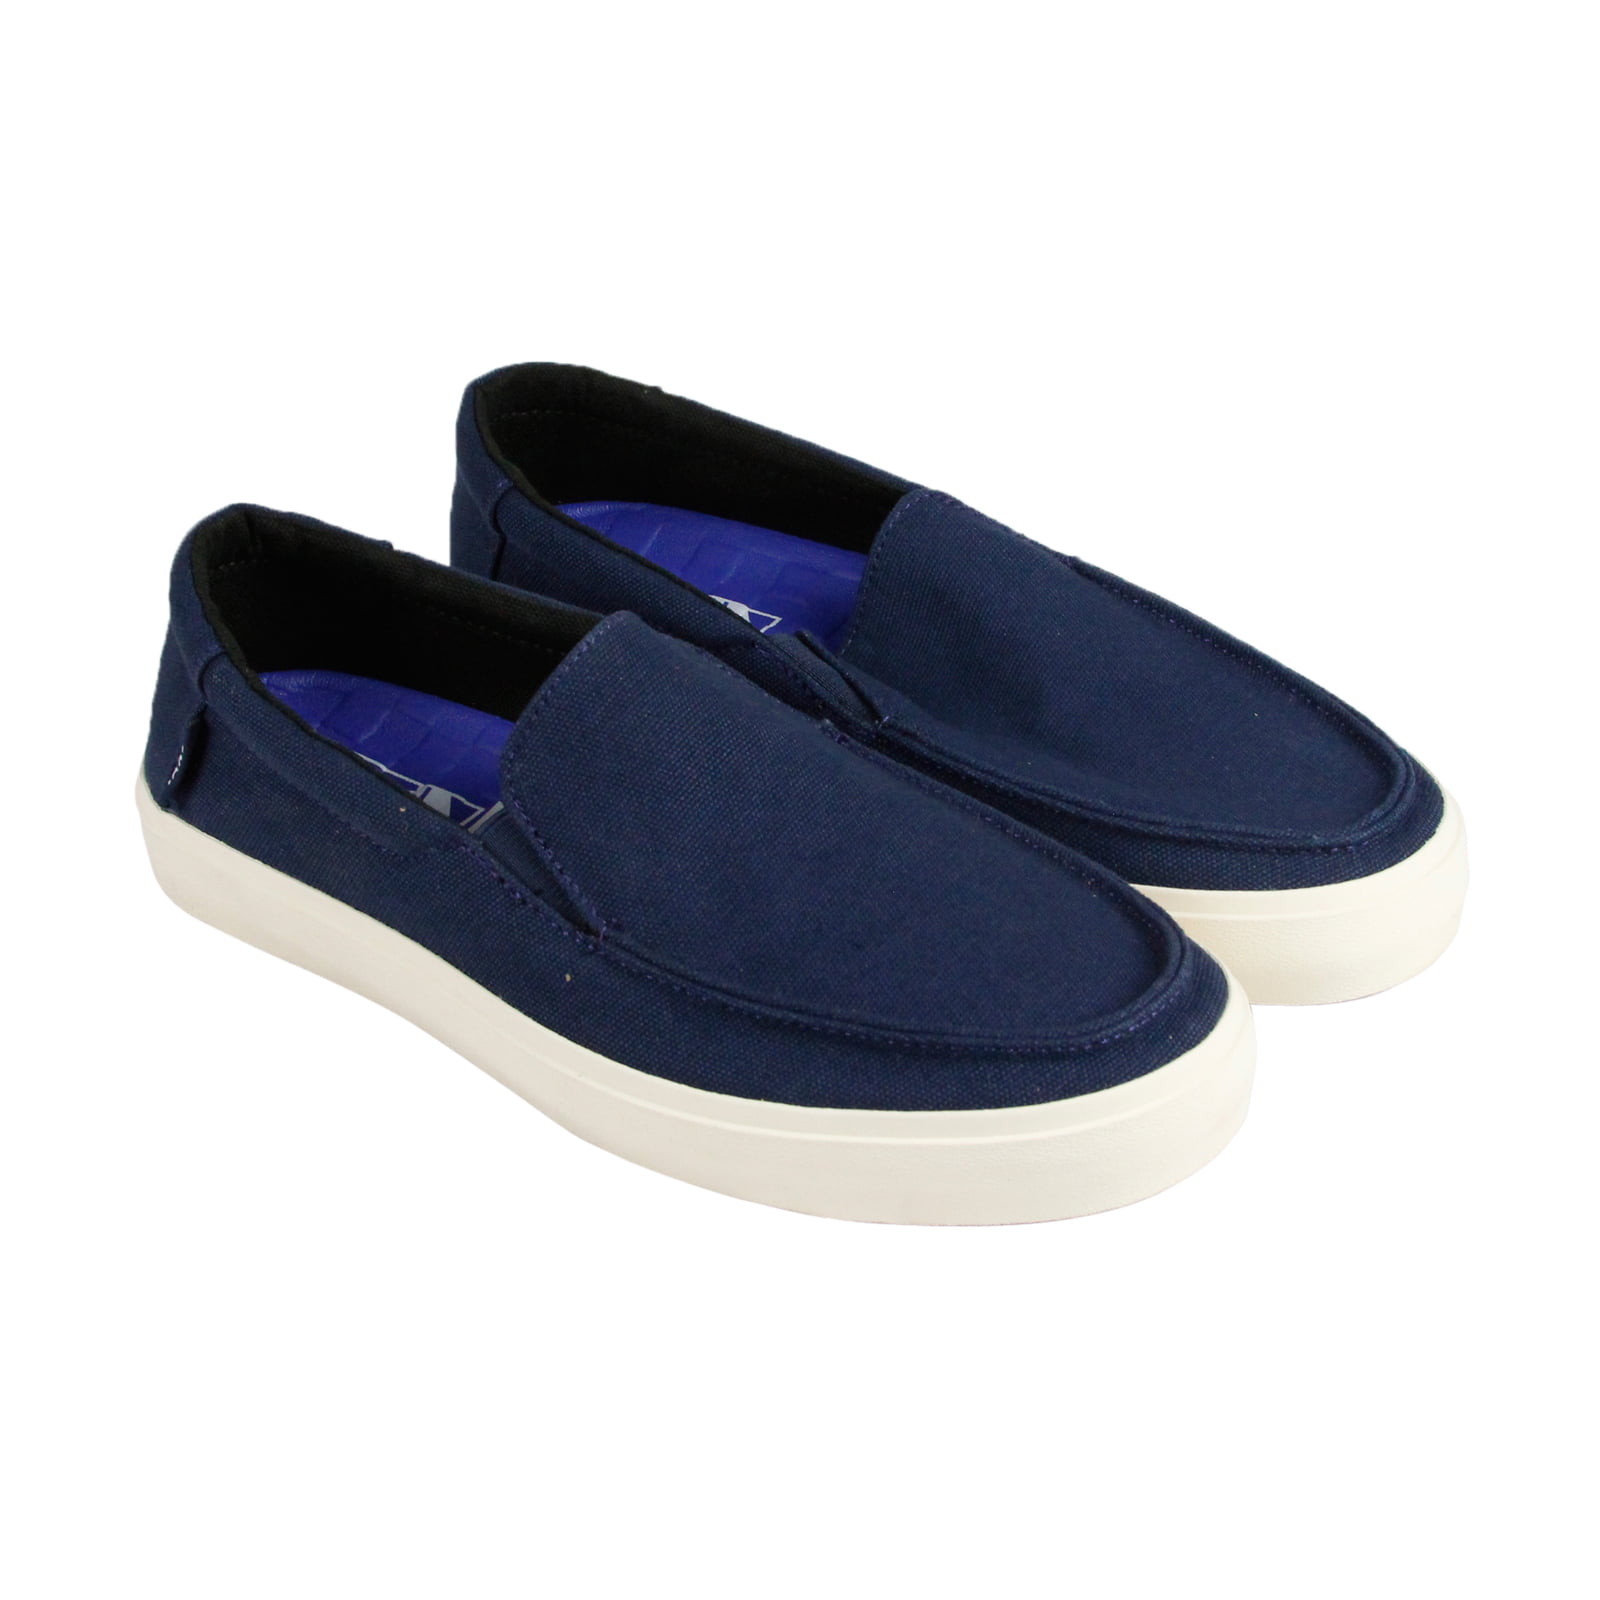 Vans - Vans Bali Sf Mens Blue Canvas Sneakers Slip On Sneakers Shoes ...